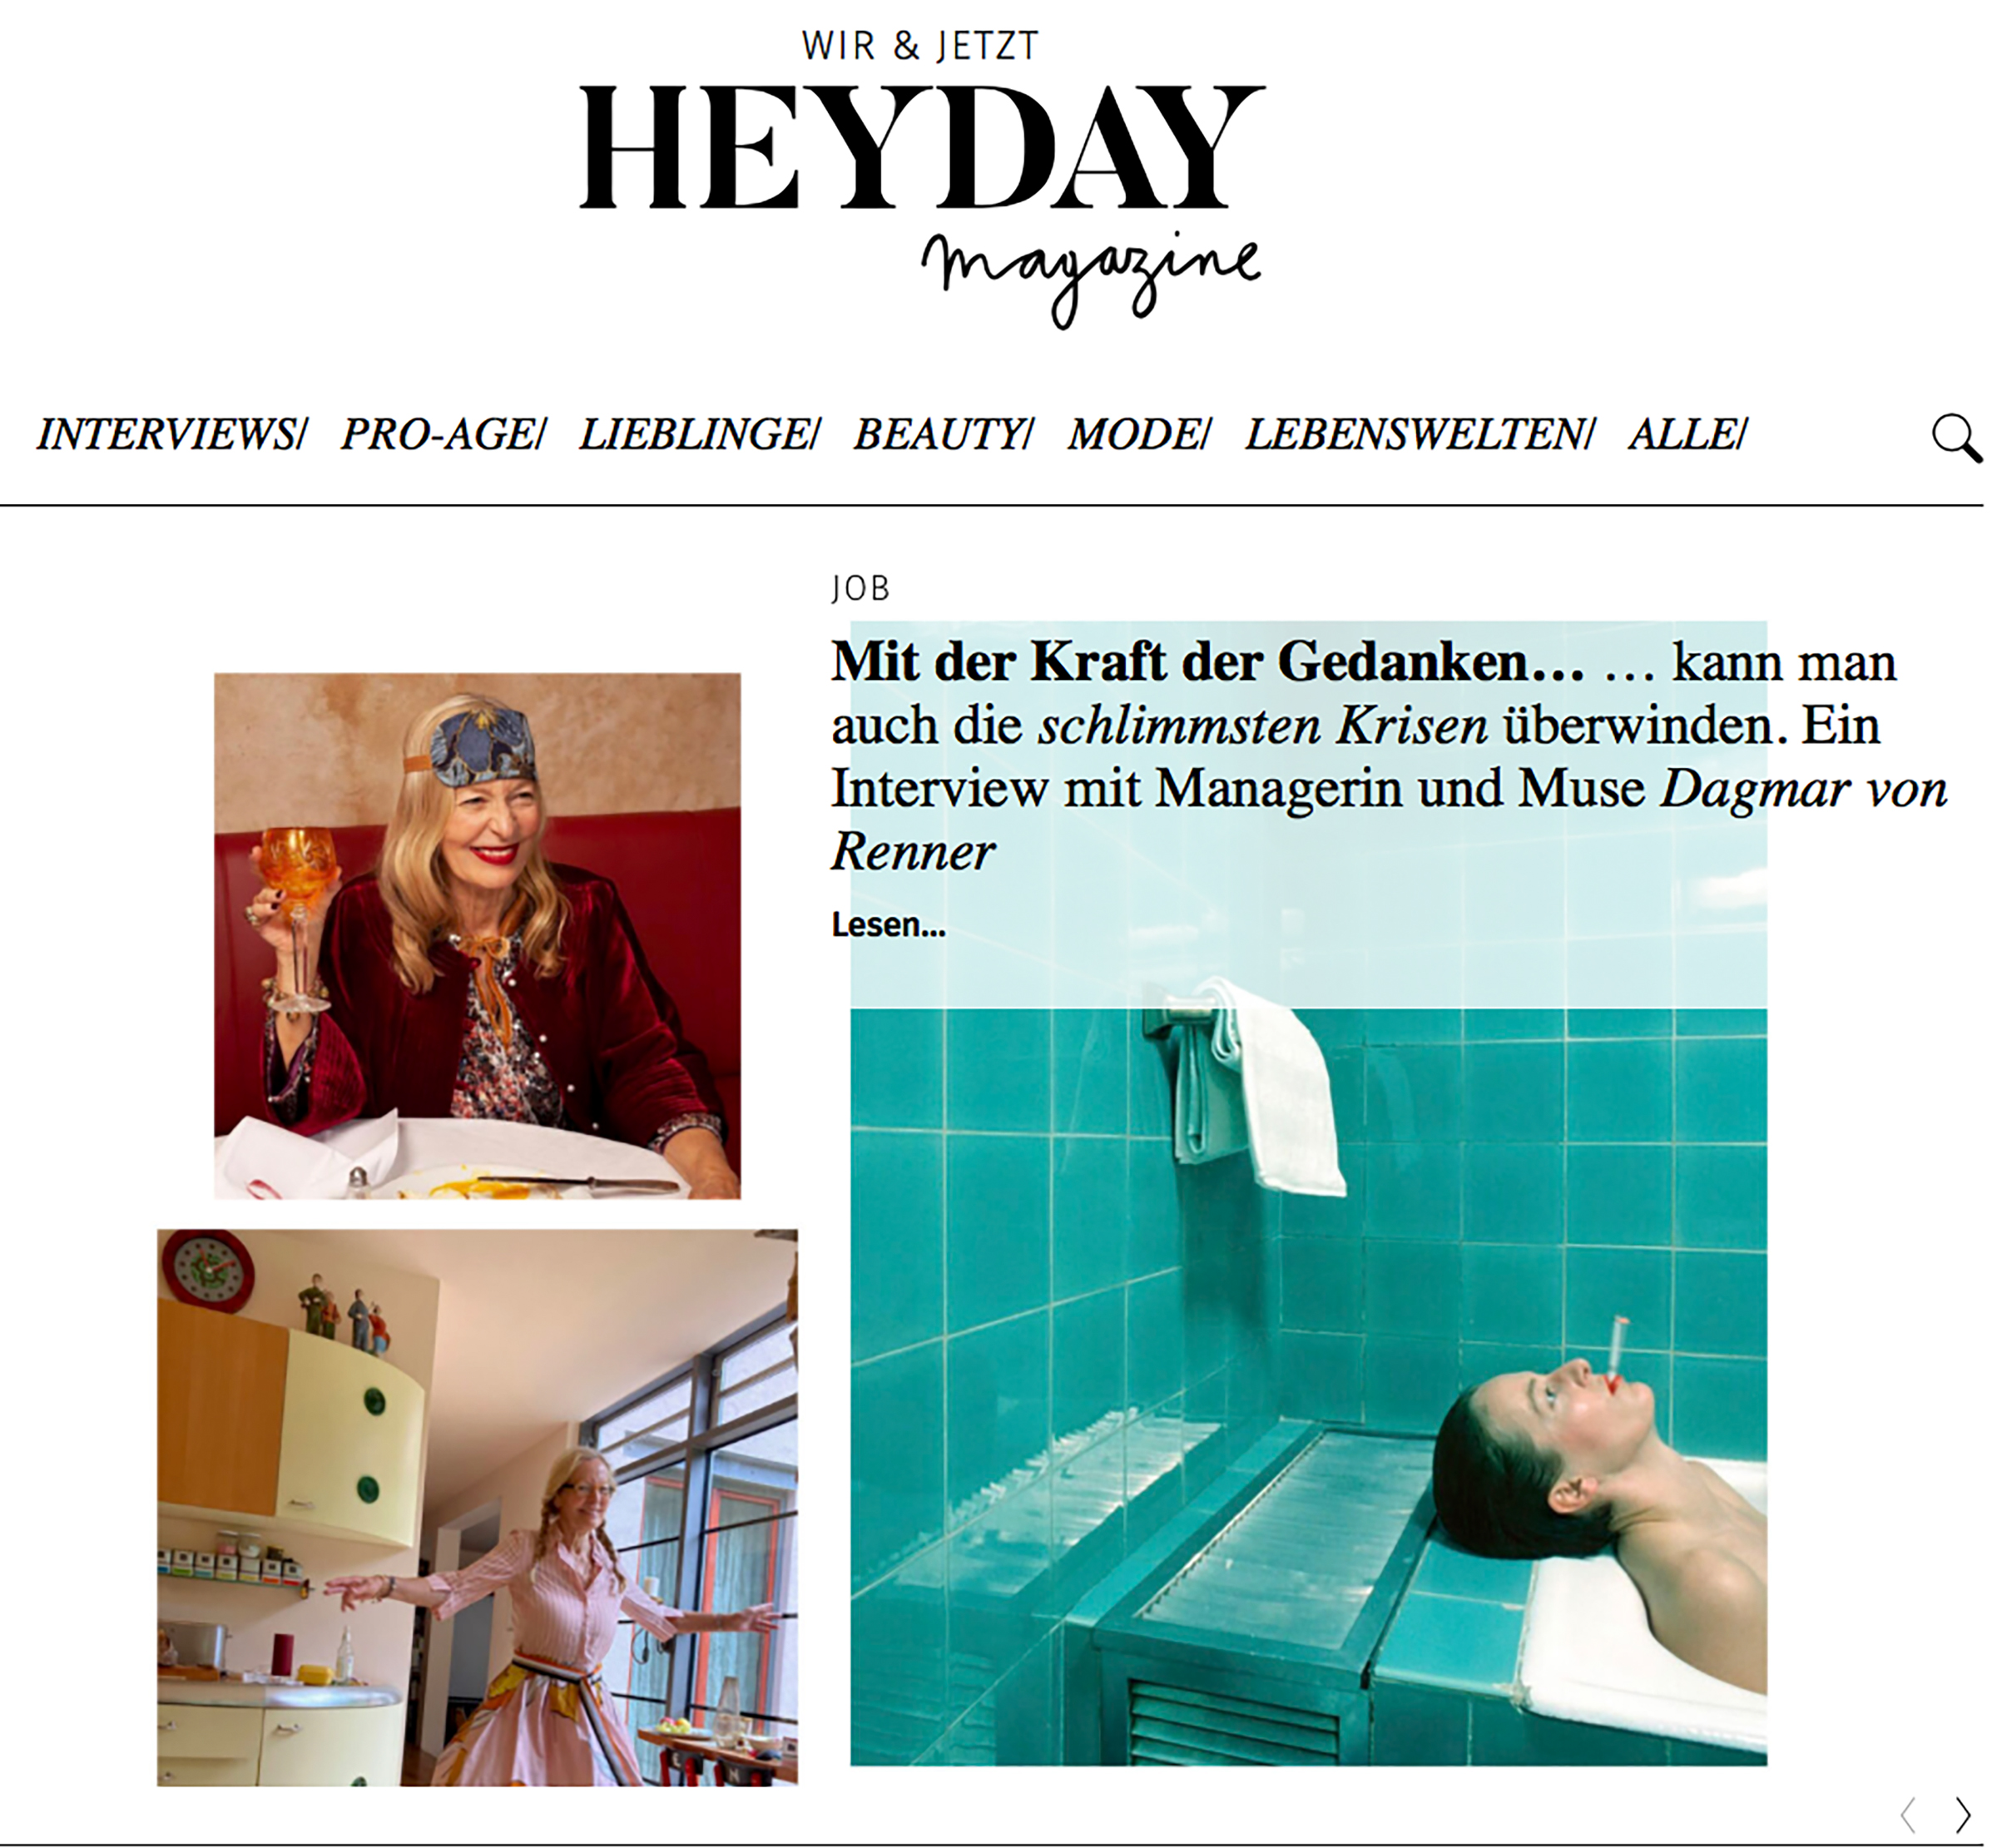 Heydeay magazine, Dagmar von Renner, Interview mit Dagmar von Renner, Managerin, Seminarleiterin